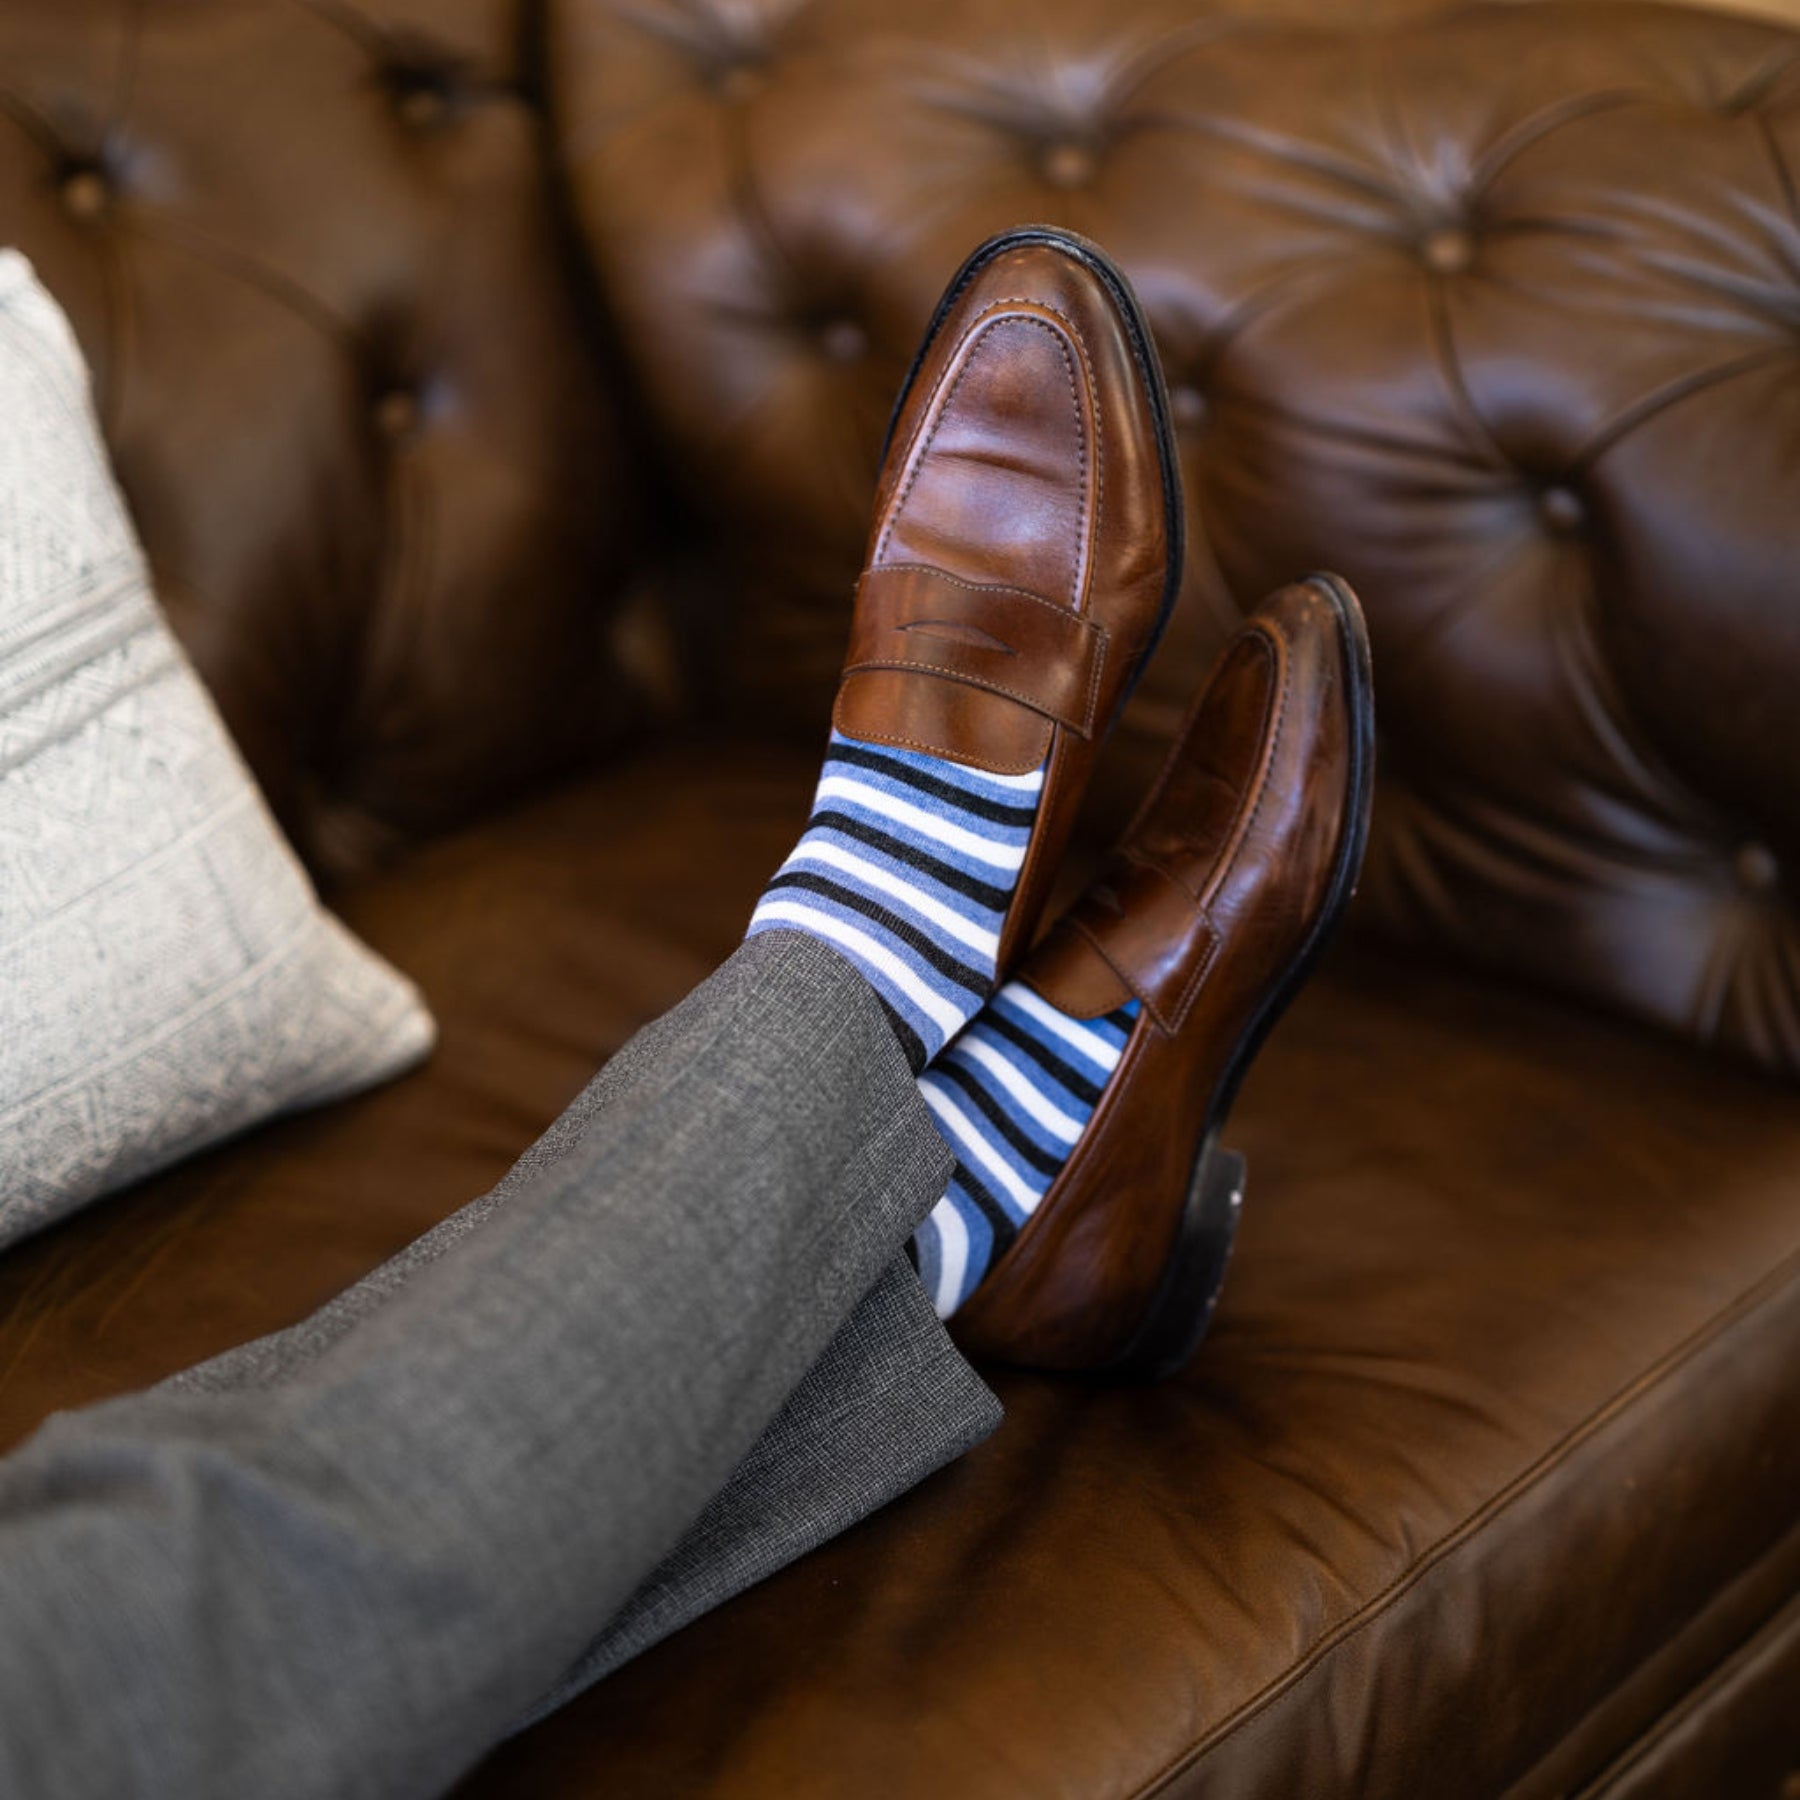 Blue, Black, and White Striped men's dress socks